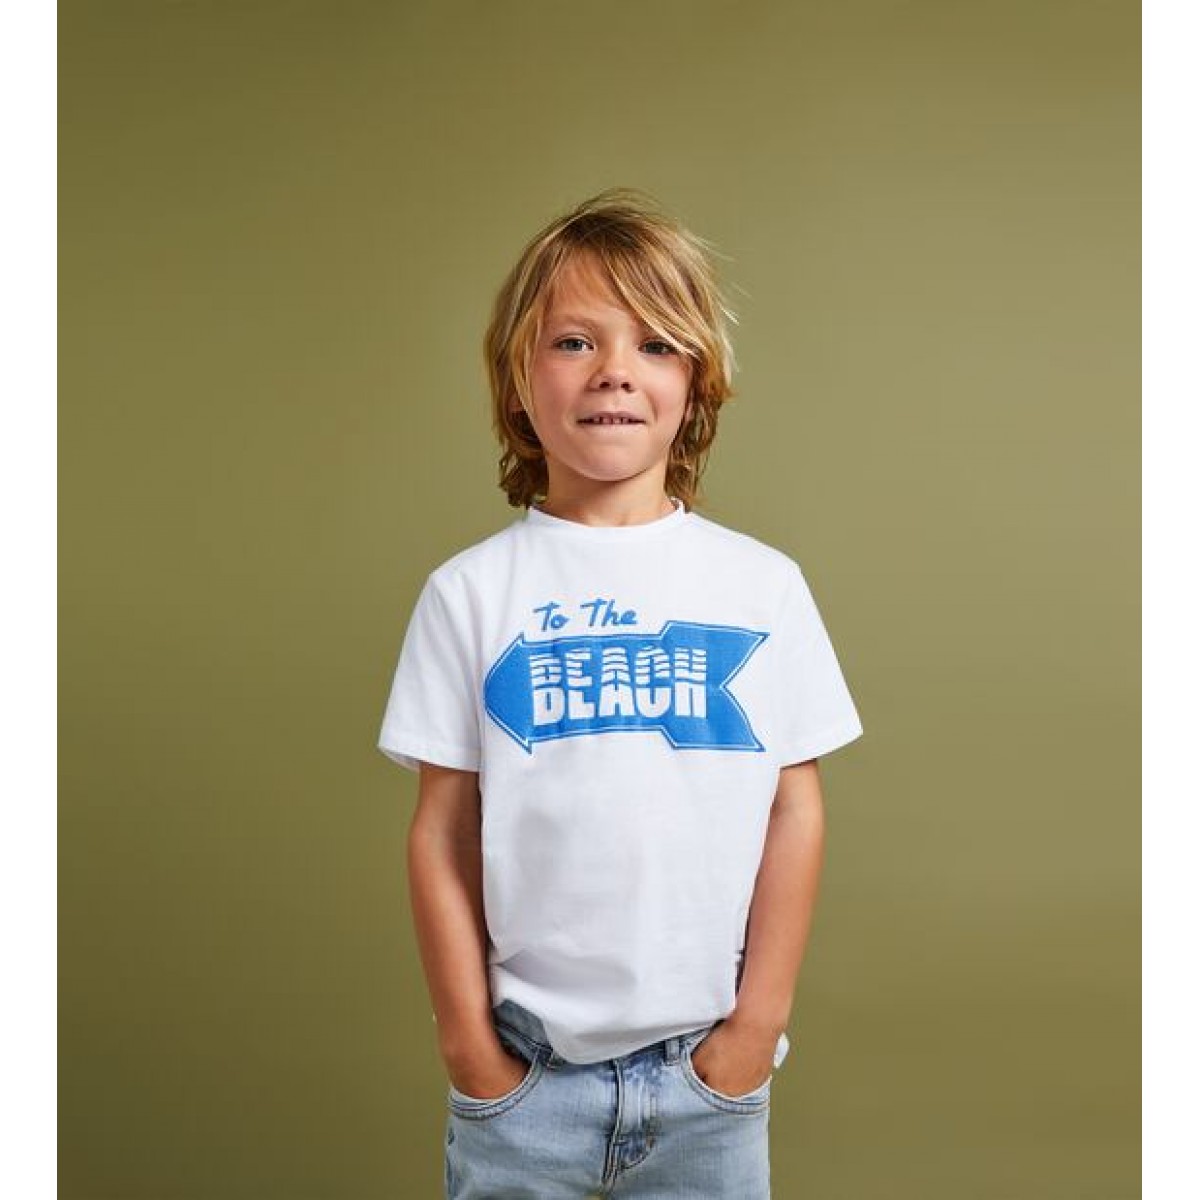 Zara To The Beach' T-Shirt